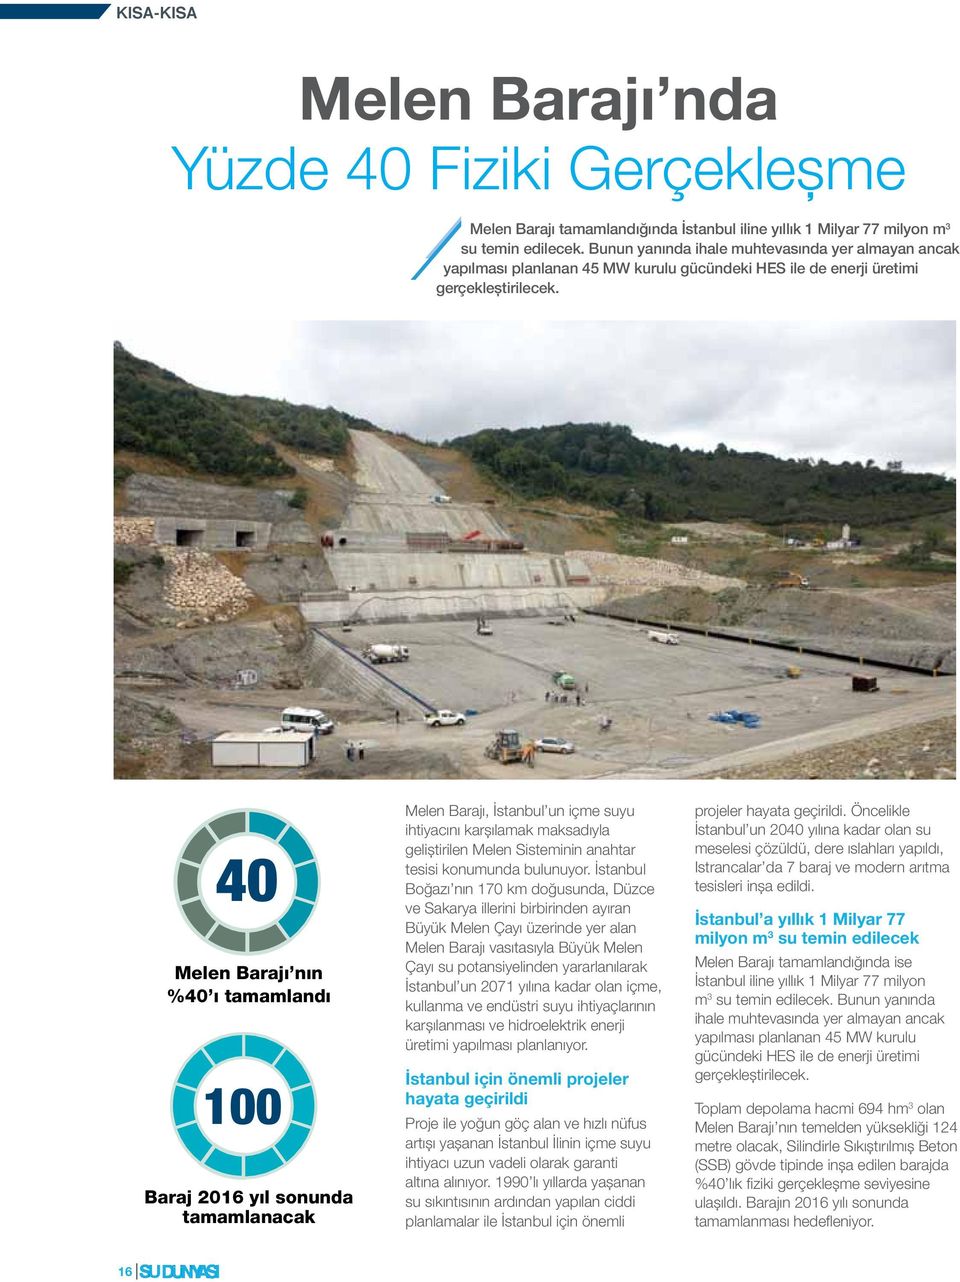 40 Melen Barajı nın %40 ı tamamlandı 100 Baraj 2016 yıl sonunda tamamlanacak Melen Barajı, İstanbul un içme suyu ihtiyacını karşılamak maksadıyla geliştirilen Melen Sisteminin anahtar tesisi